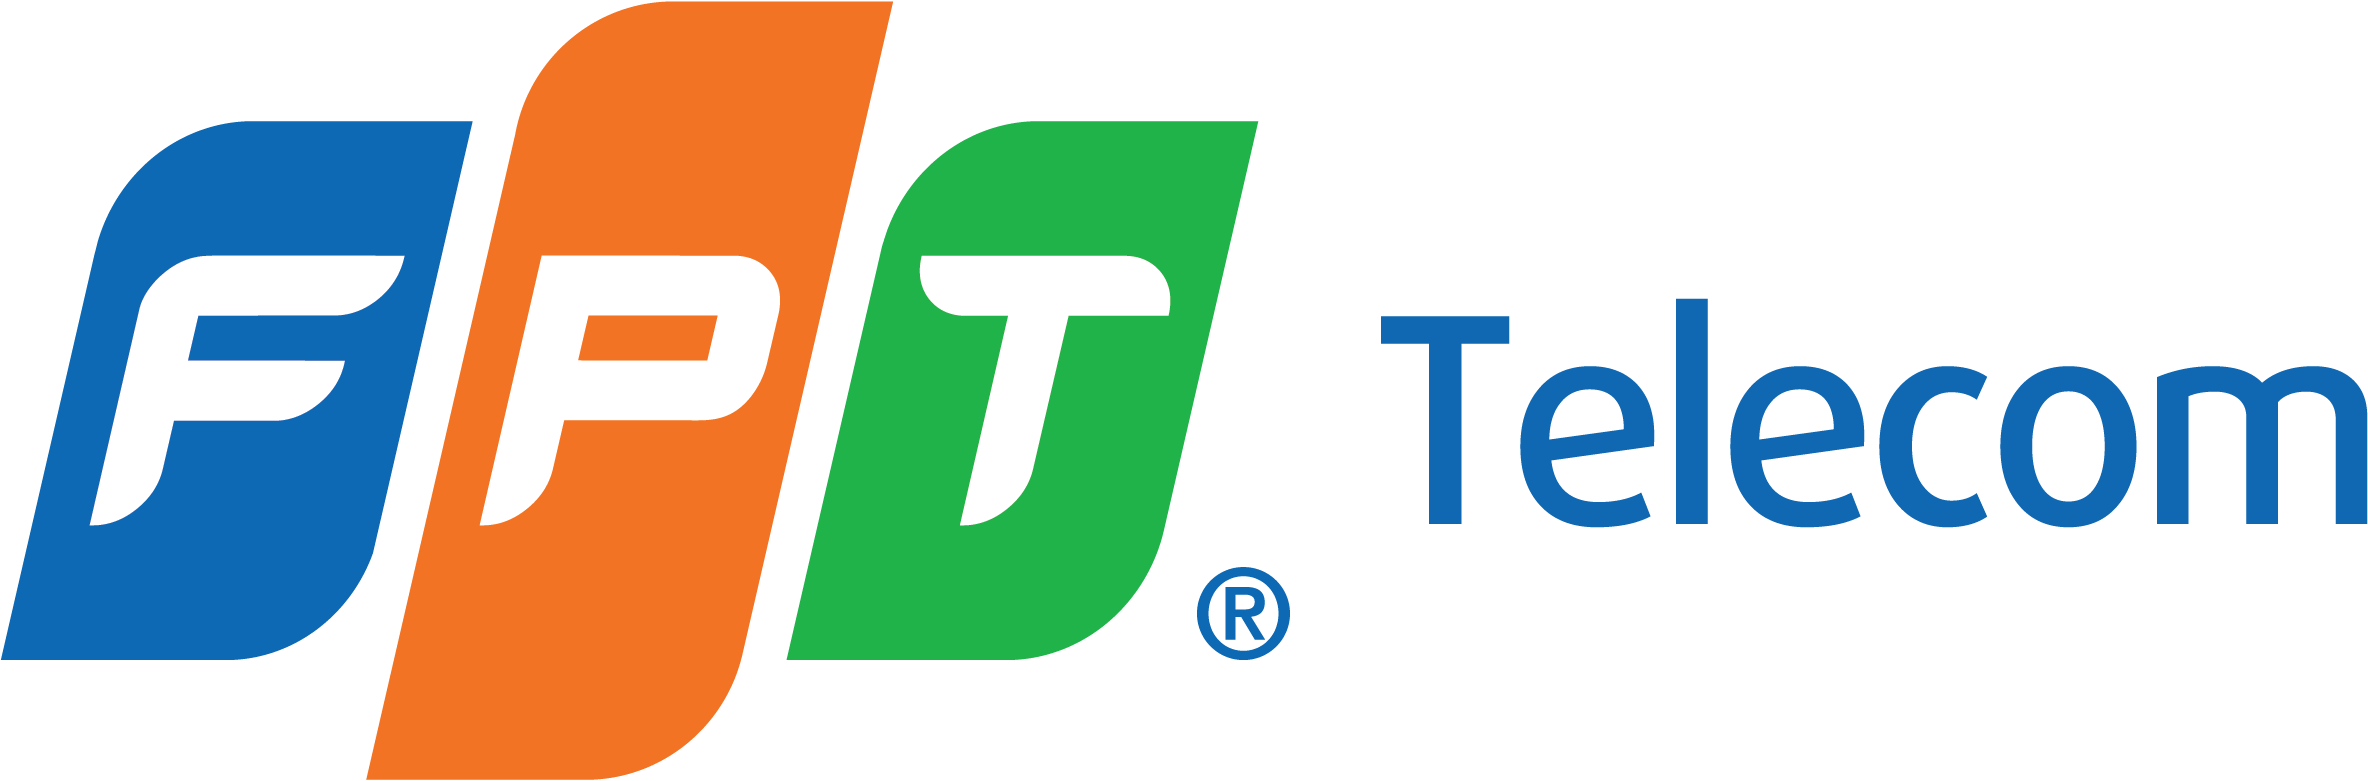 FPT_Telecom_logo